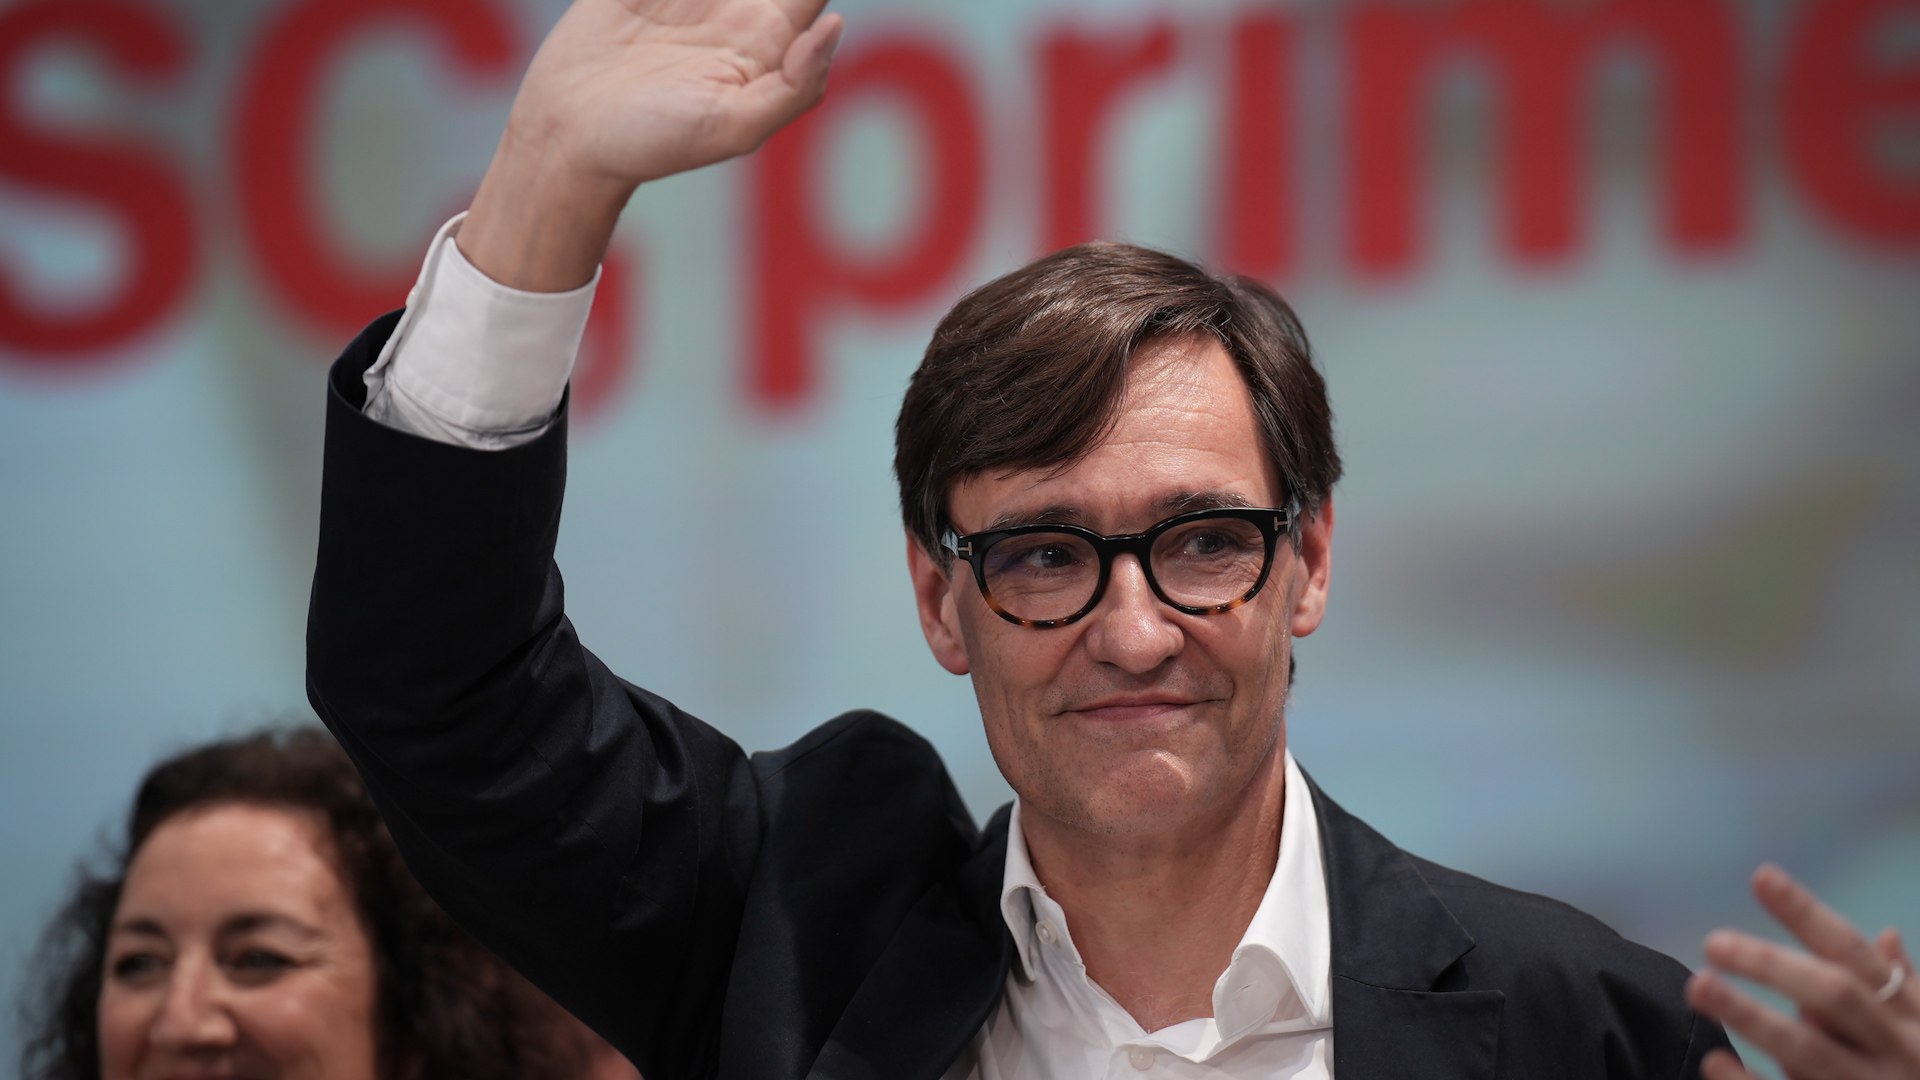 El PSC descarta investir a Puigdemont "aunque amenace con bloquear el Gobierno espaol"